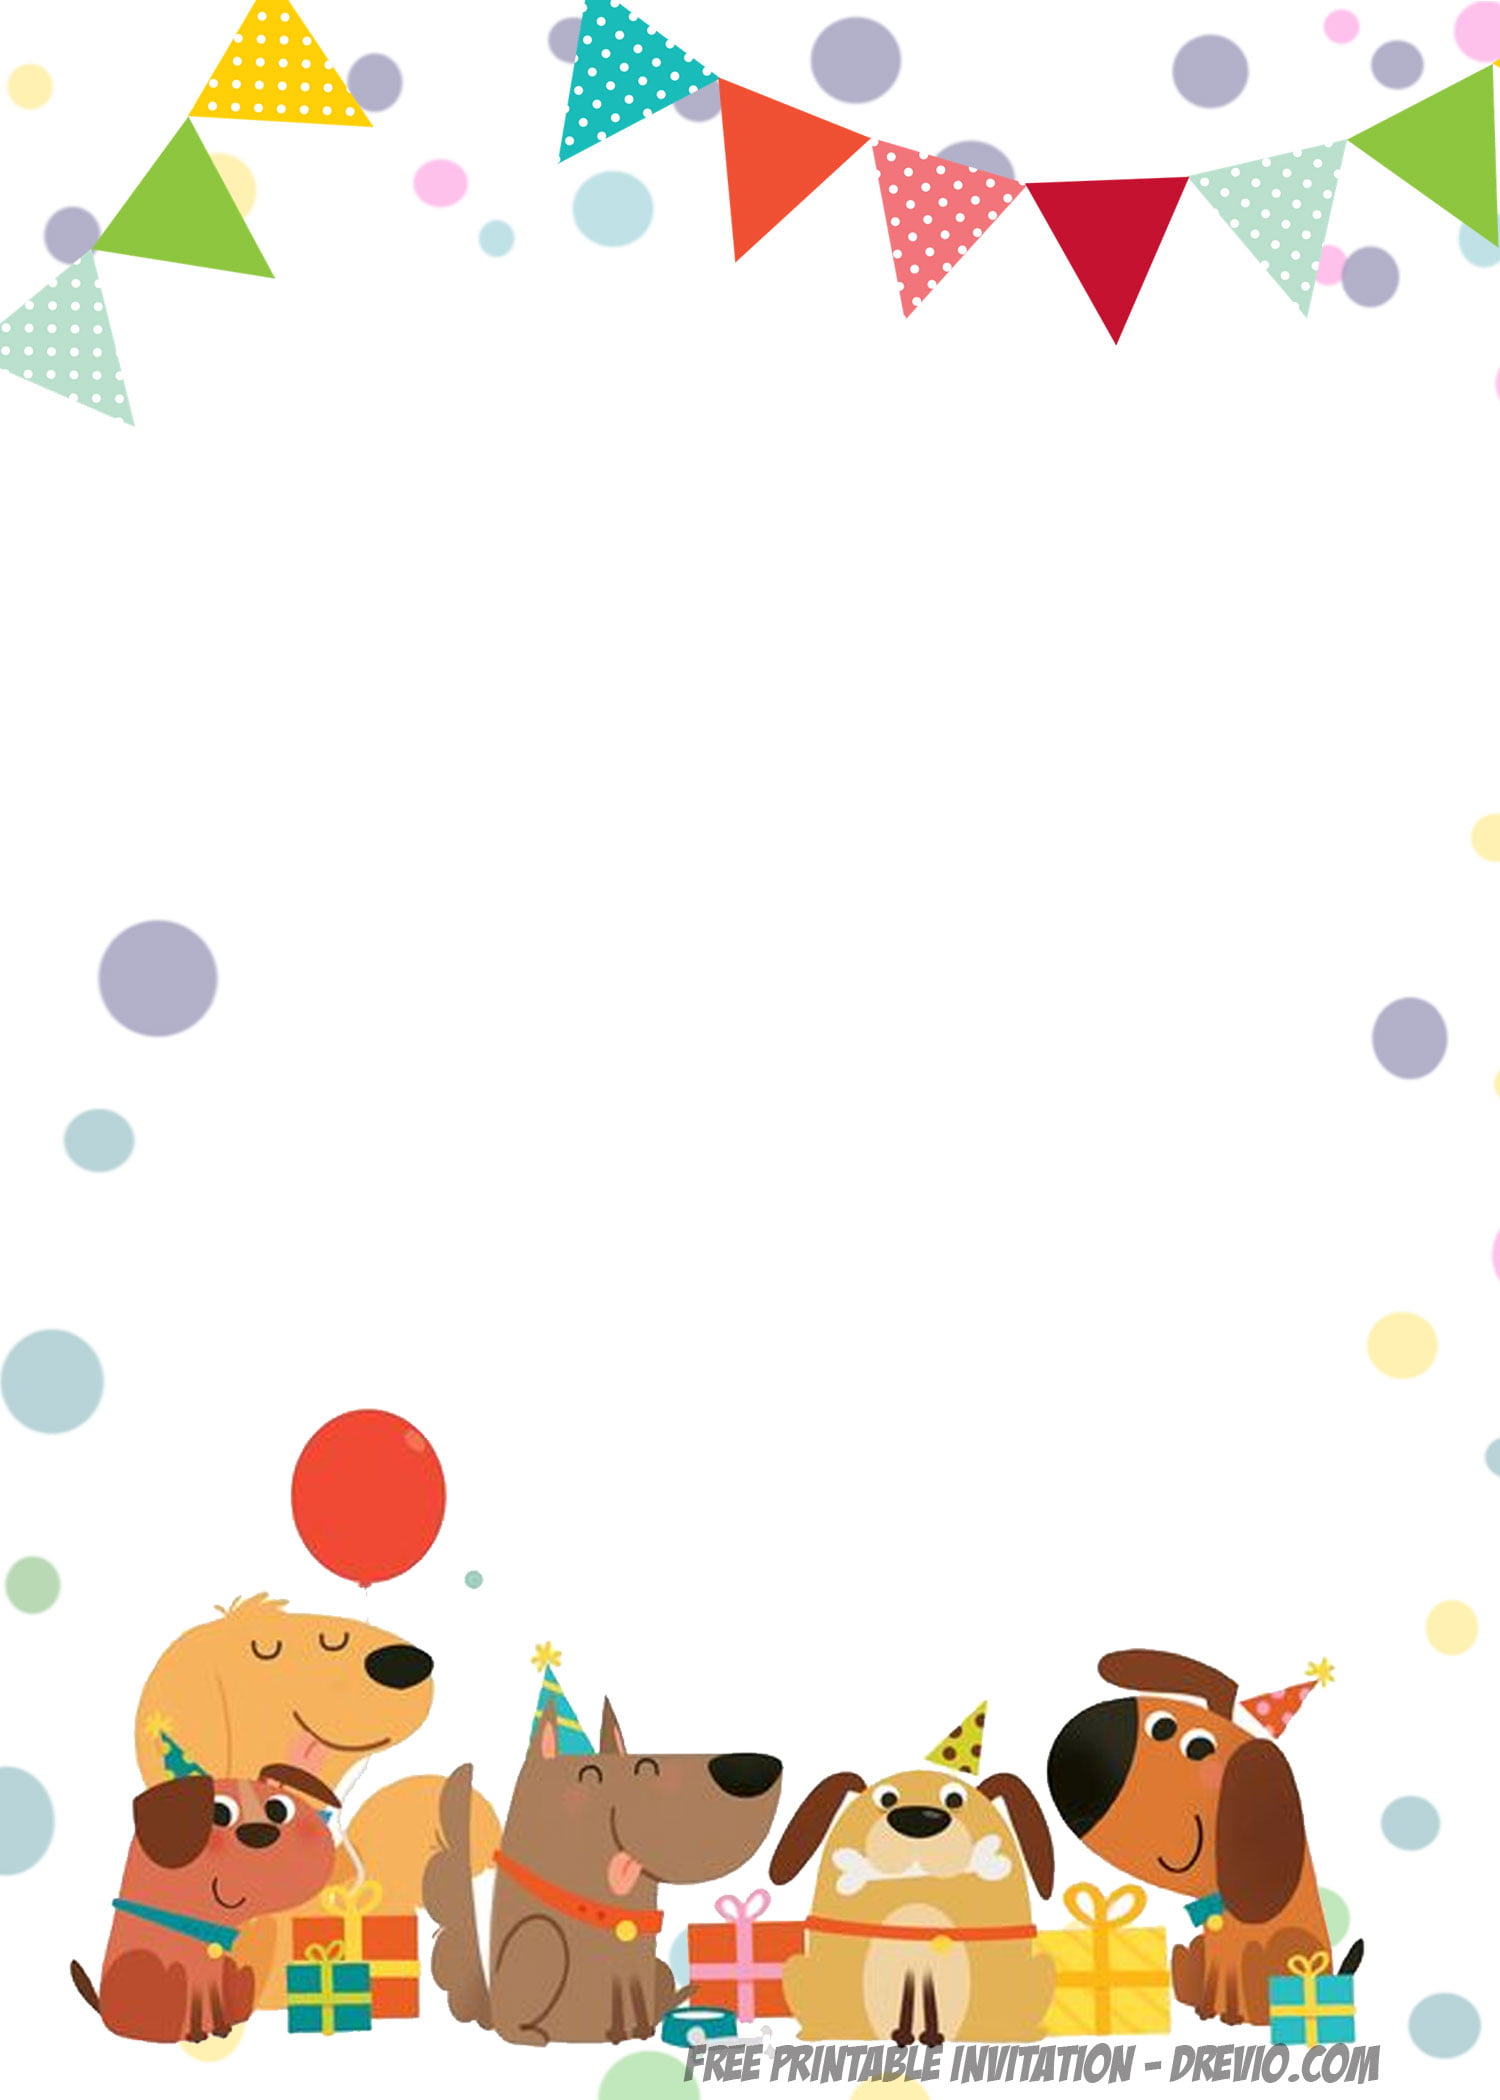 invite-puppy-invitations-dog-birthday-invitations-puppy-birthday